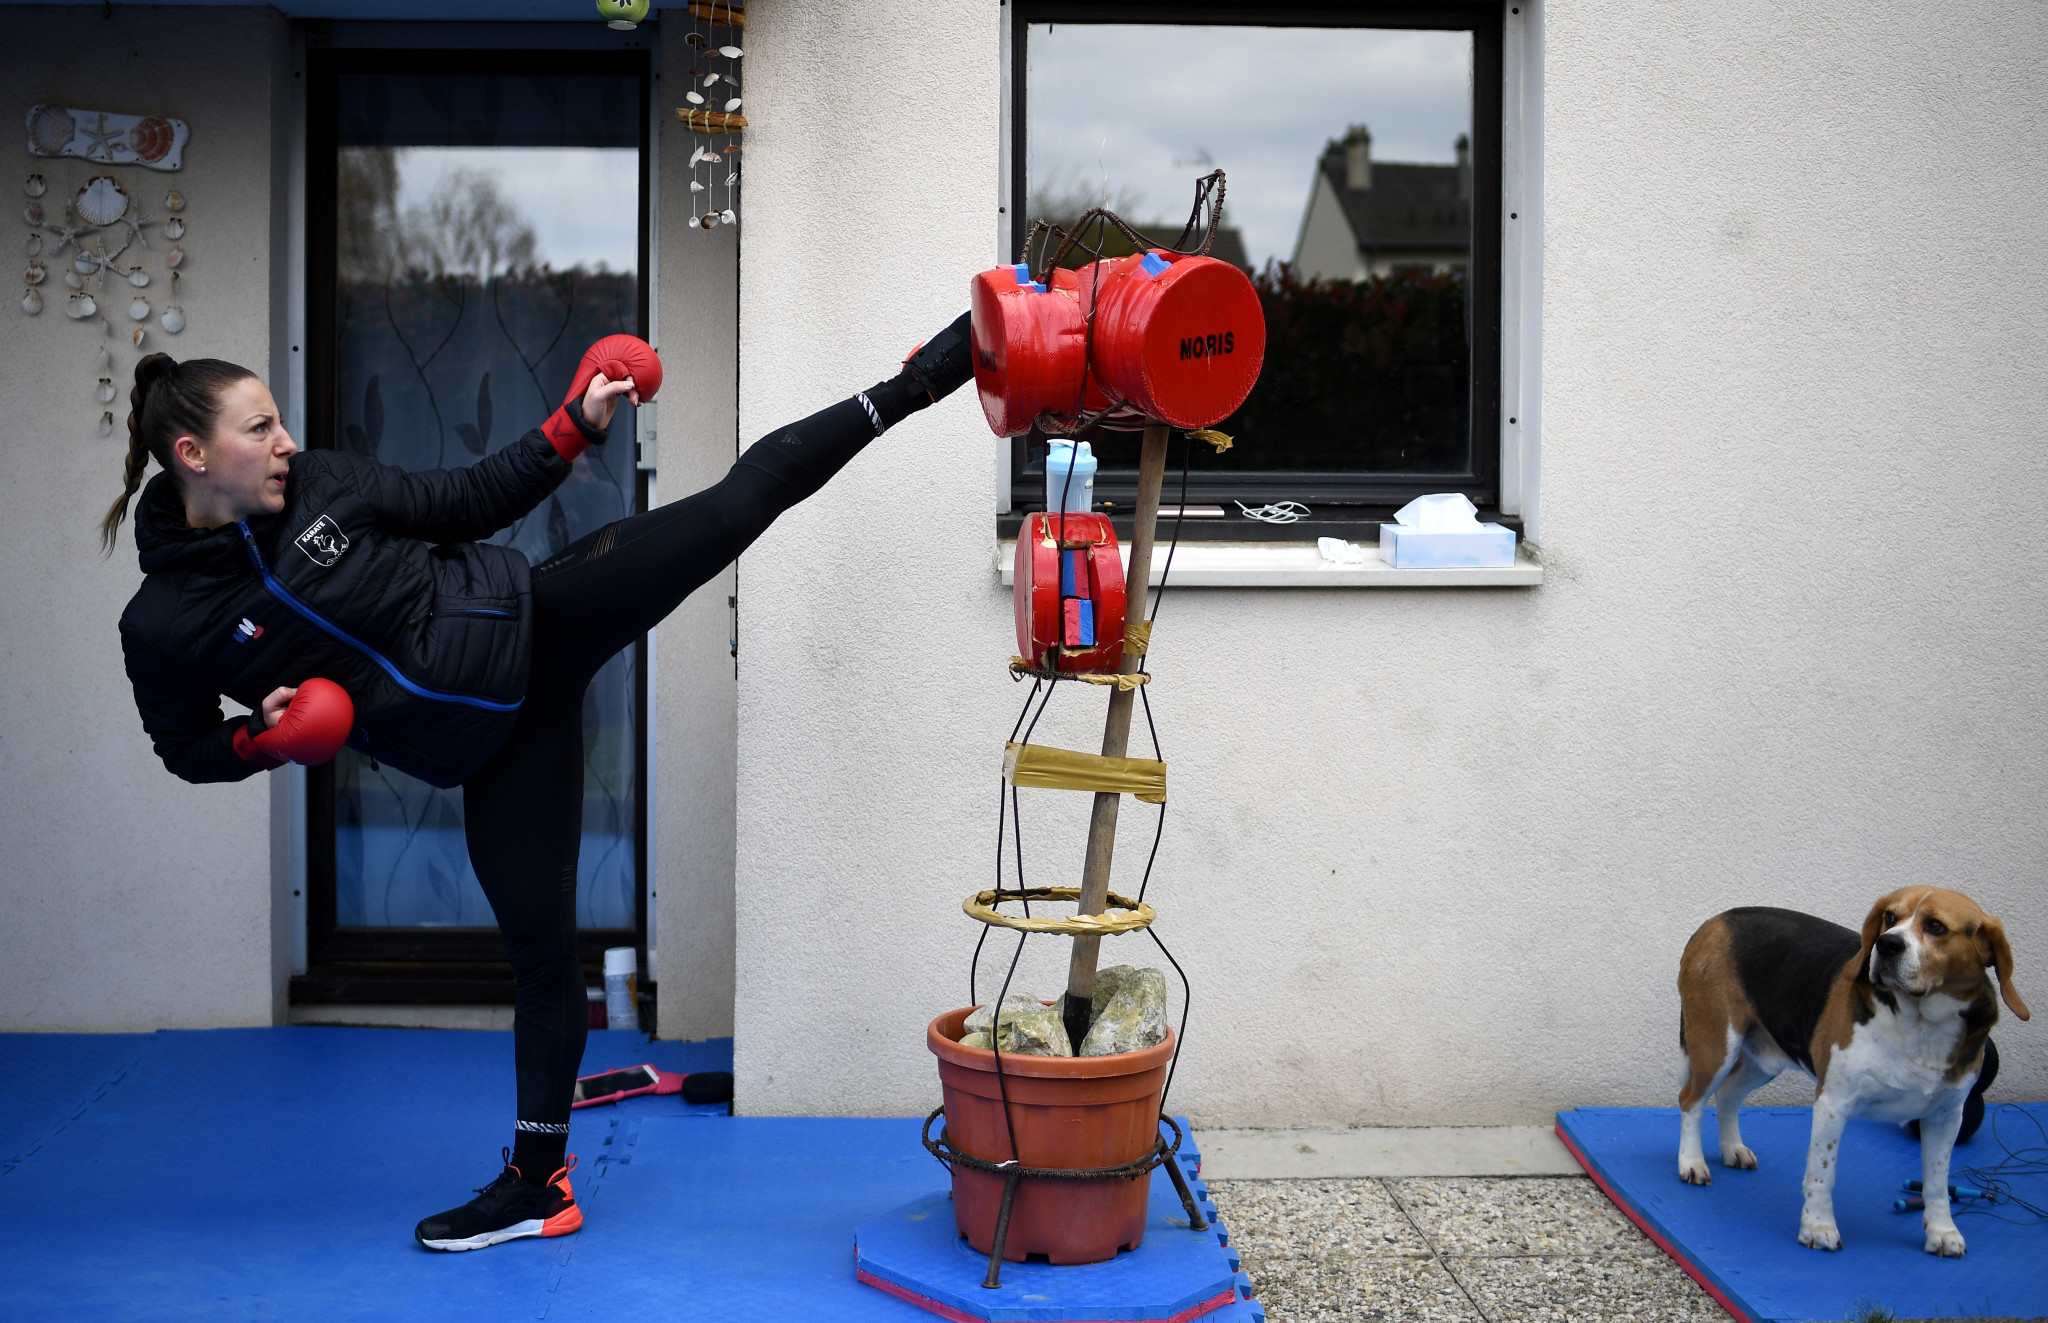 Karateka comme Alexandra Recchia ont dû changer de routine pendant la pandémie de coronavirus © Getty Images